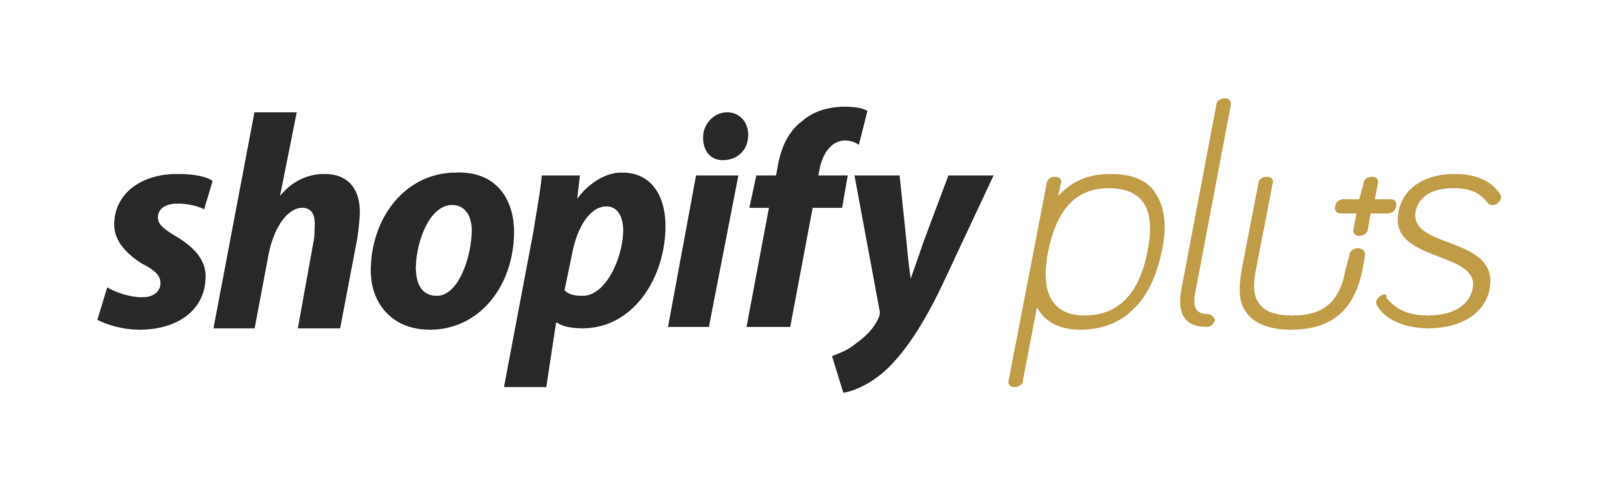 shopify-plus-logo-transparent.png